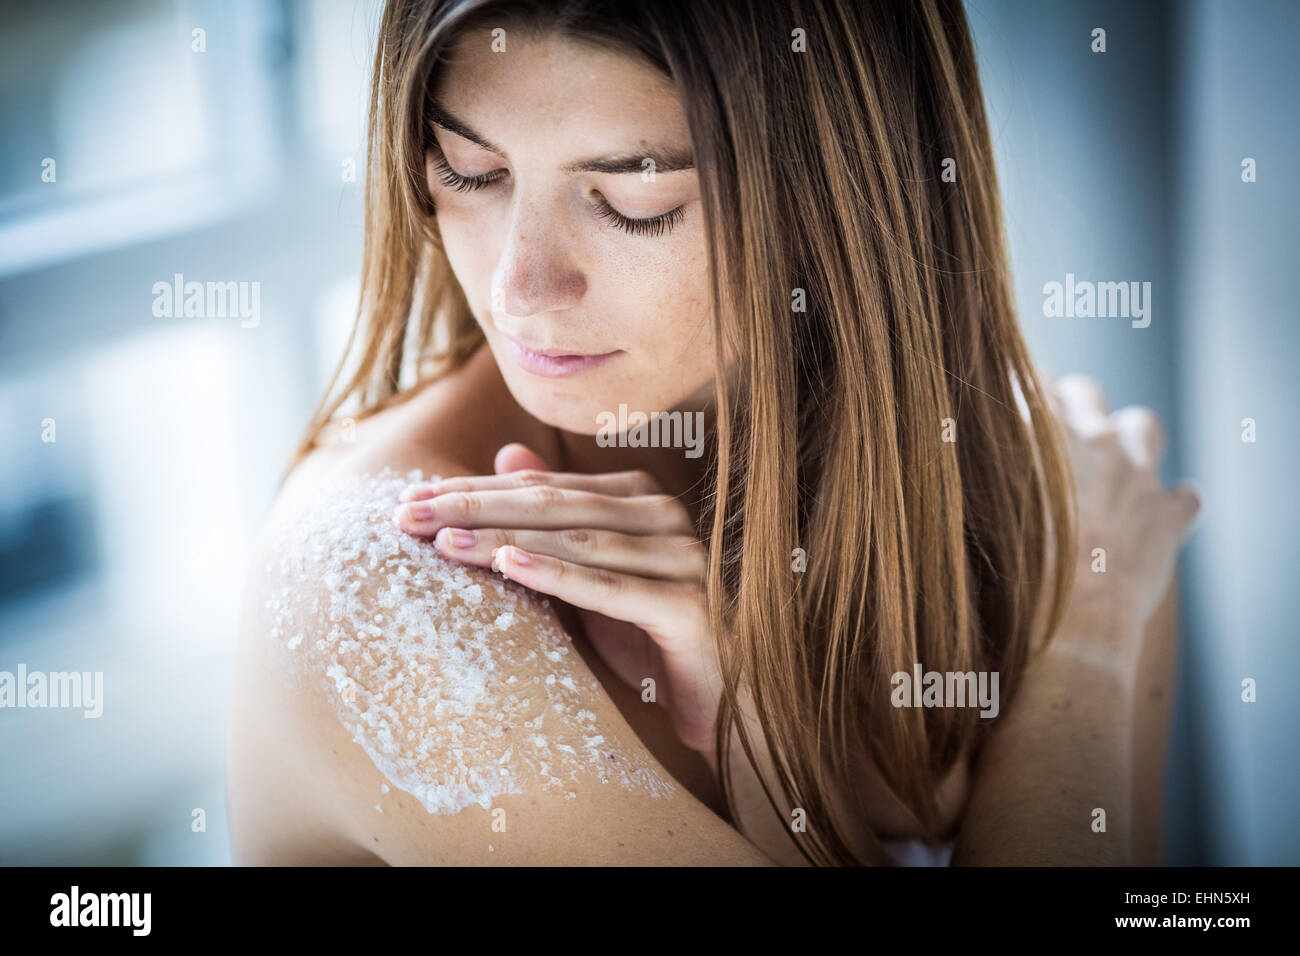 Woman using exfoliating scrub treatment. Stock Photo